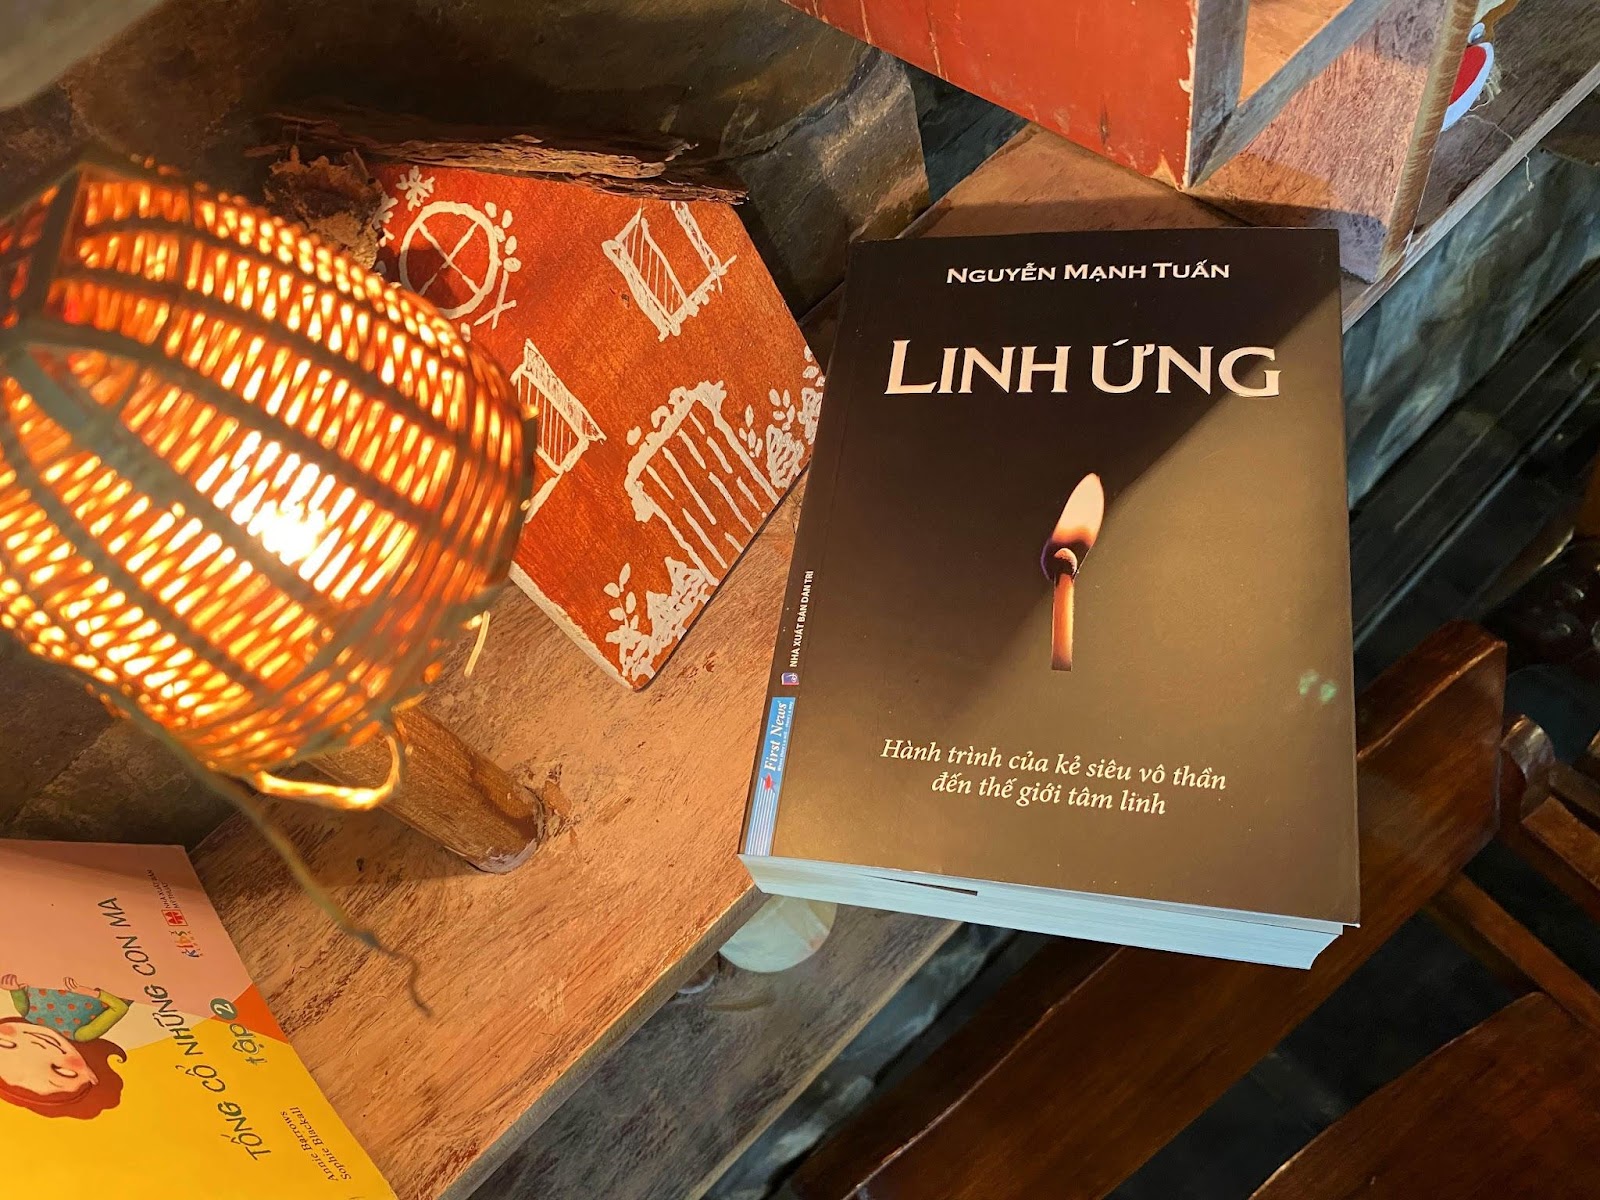 Nhà văn Nguyễn Mạnh Tuấn kể chuyện hành trình tâm linh đậm tính lịch sử dân tộc - 4